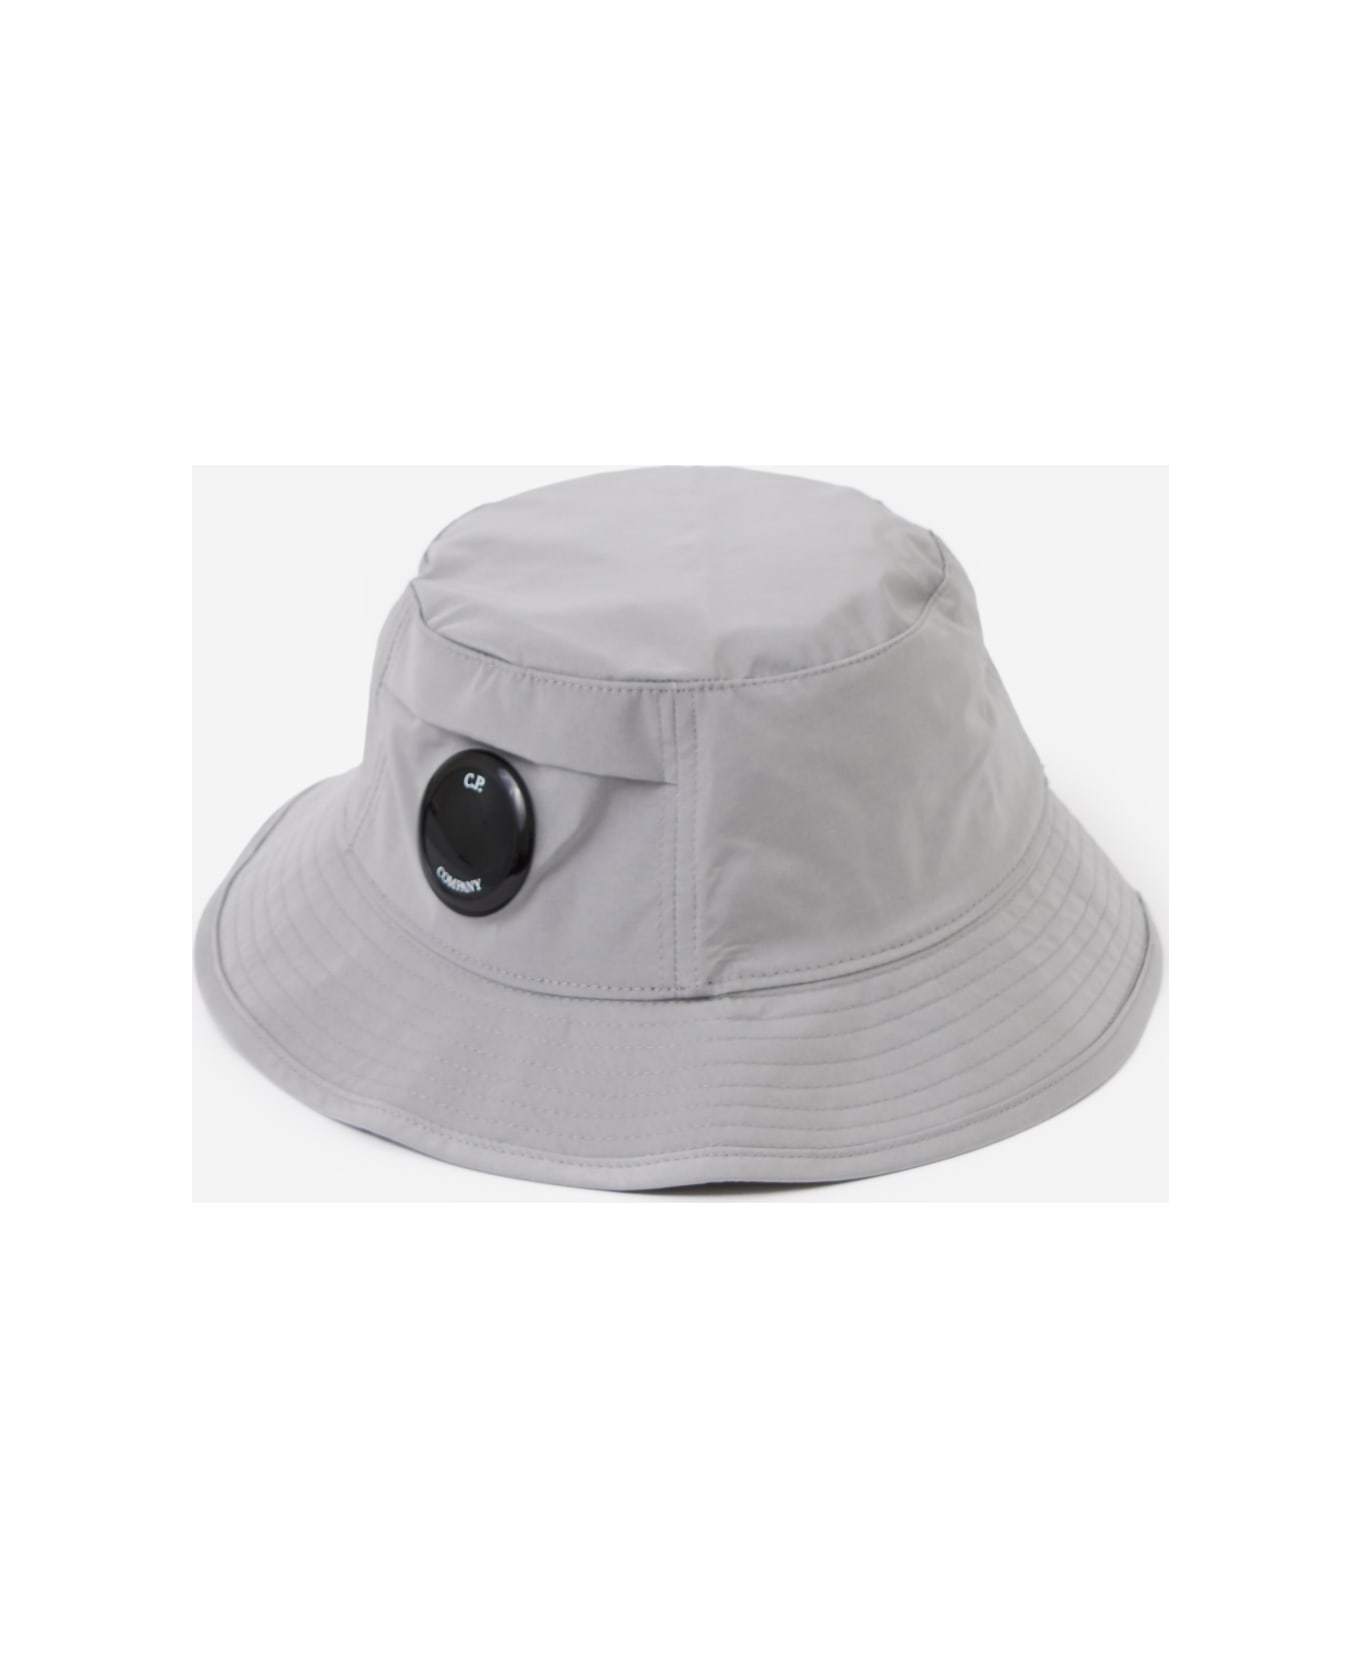 C.P. Company Hats - Drizzle 帽子